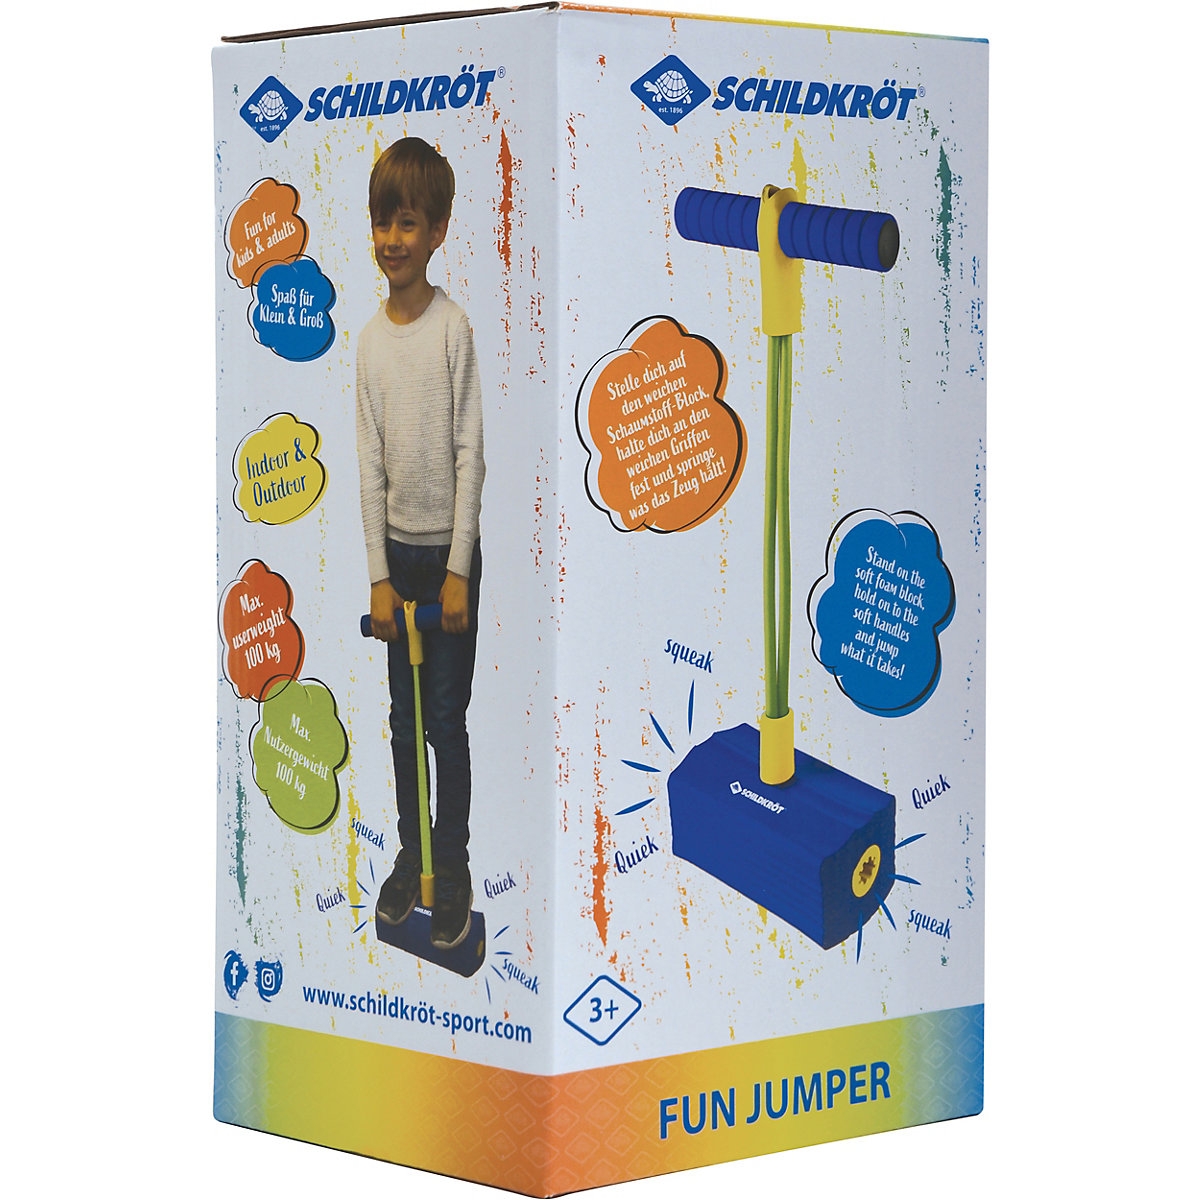 Fun Jumper - Pogo stick